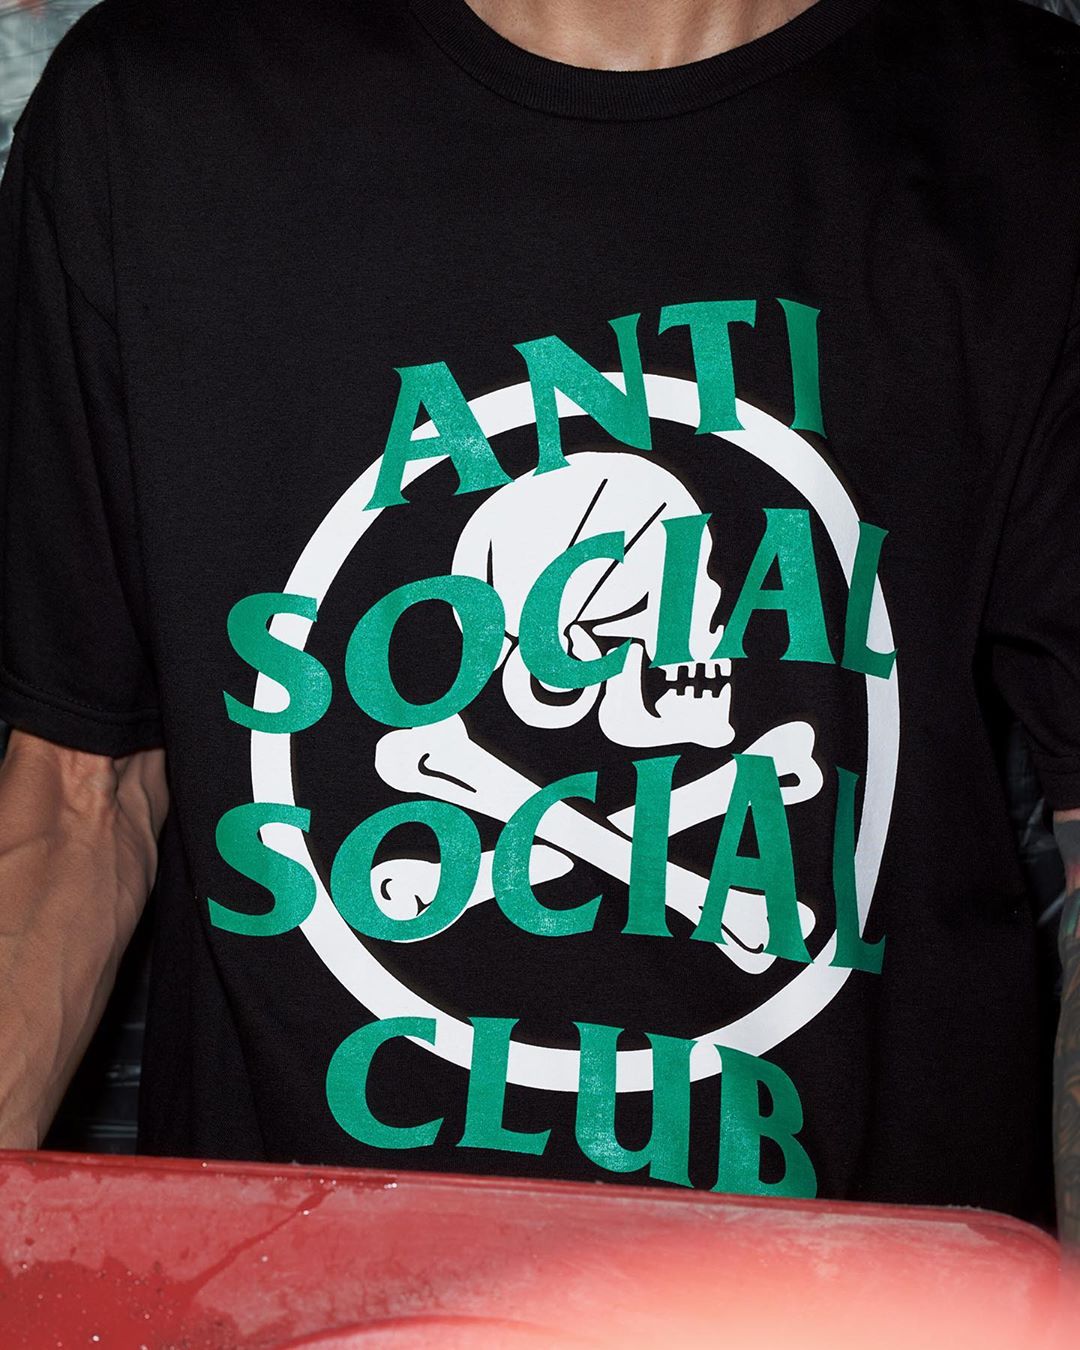 【9/19発売】NEIGHBORHOOD × Anti Social Social Club 2020 F/W コラボ(ネイバーフッド アンチ ソーシャル ソーシャル クラブ)